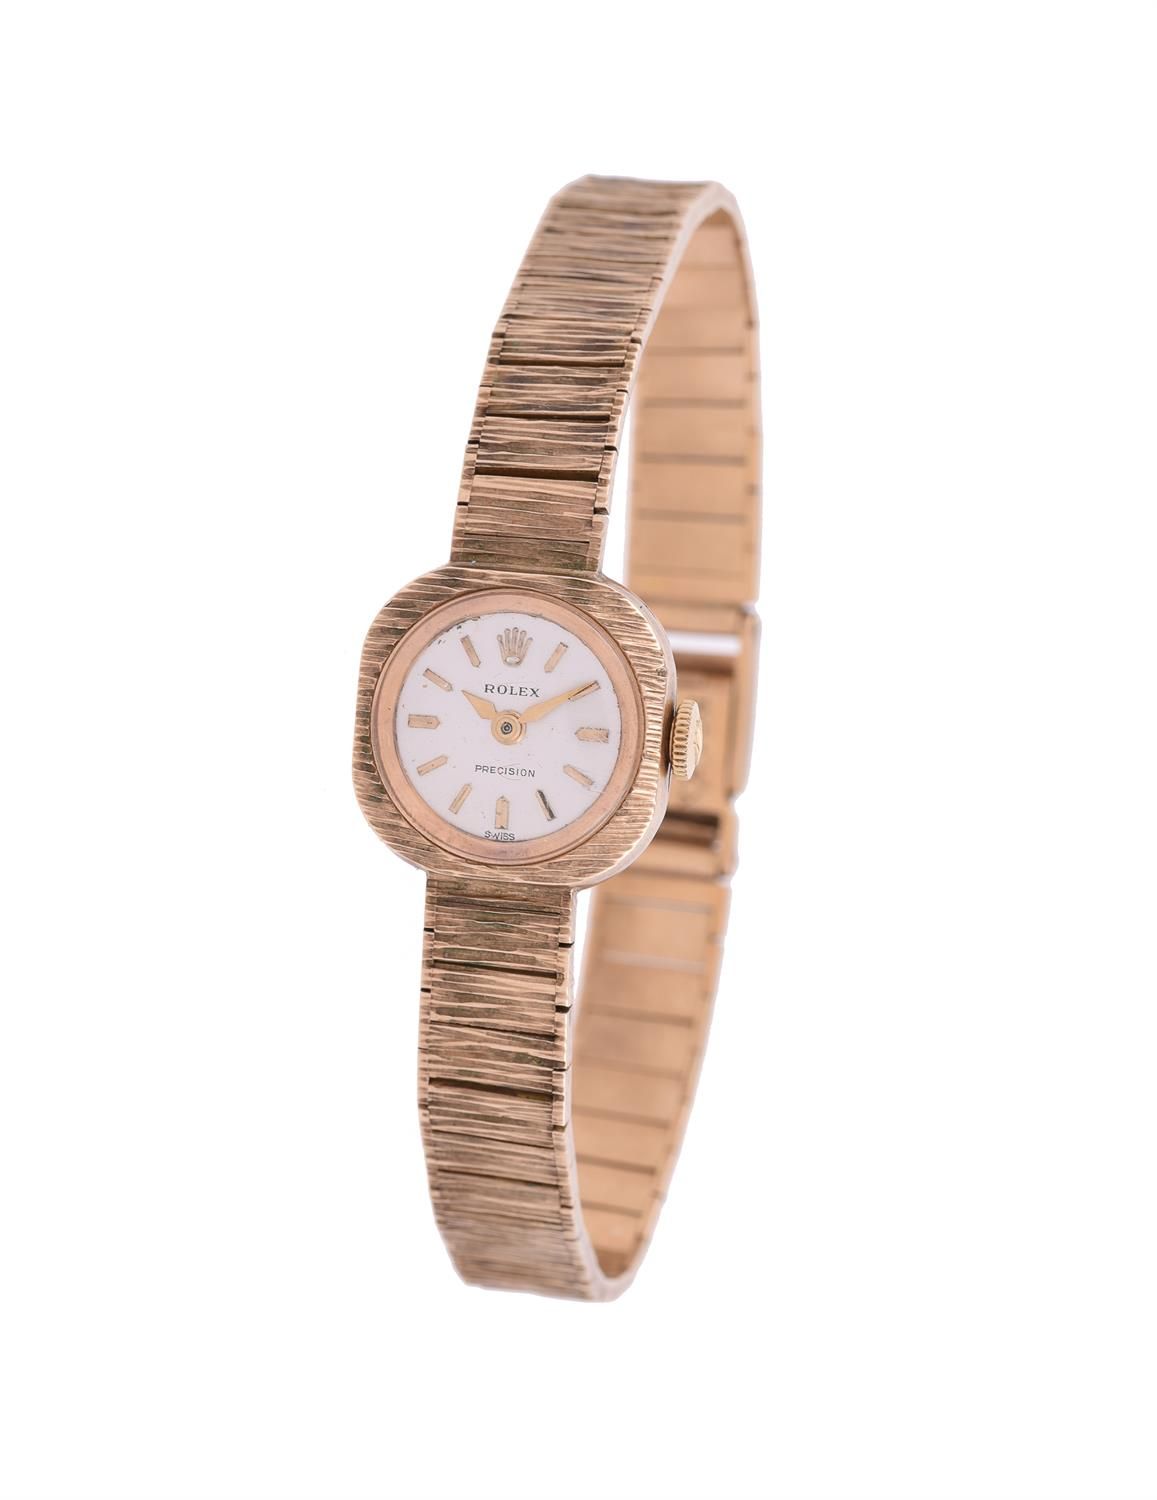 Rolex, Precision, Lady's 9 carat gold bracelet watch Rolex, Precision, reloj de &hellip;